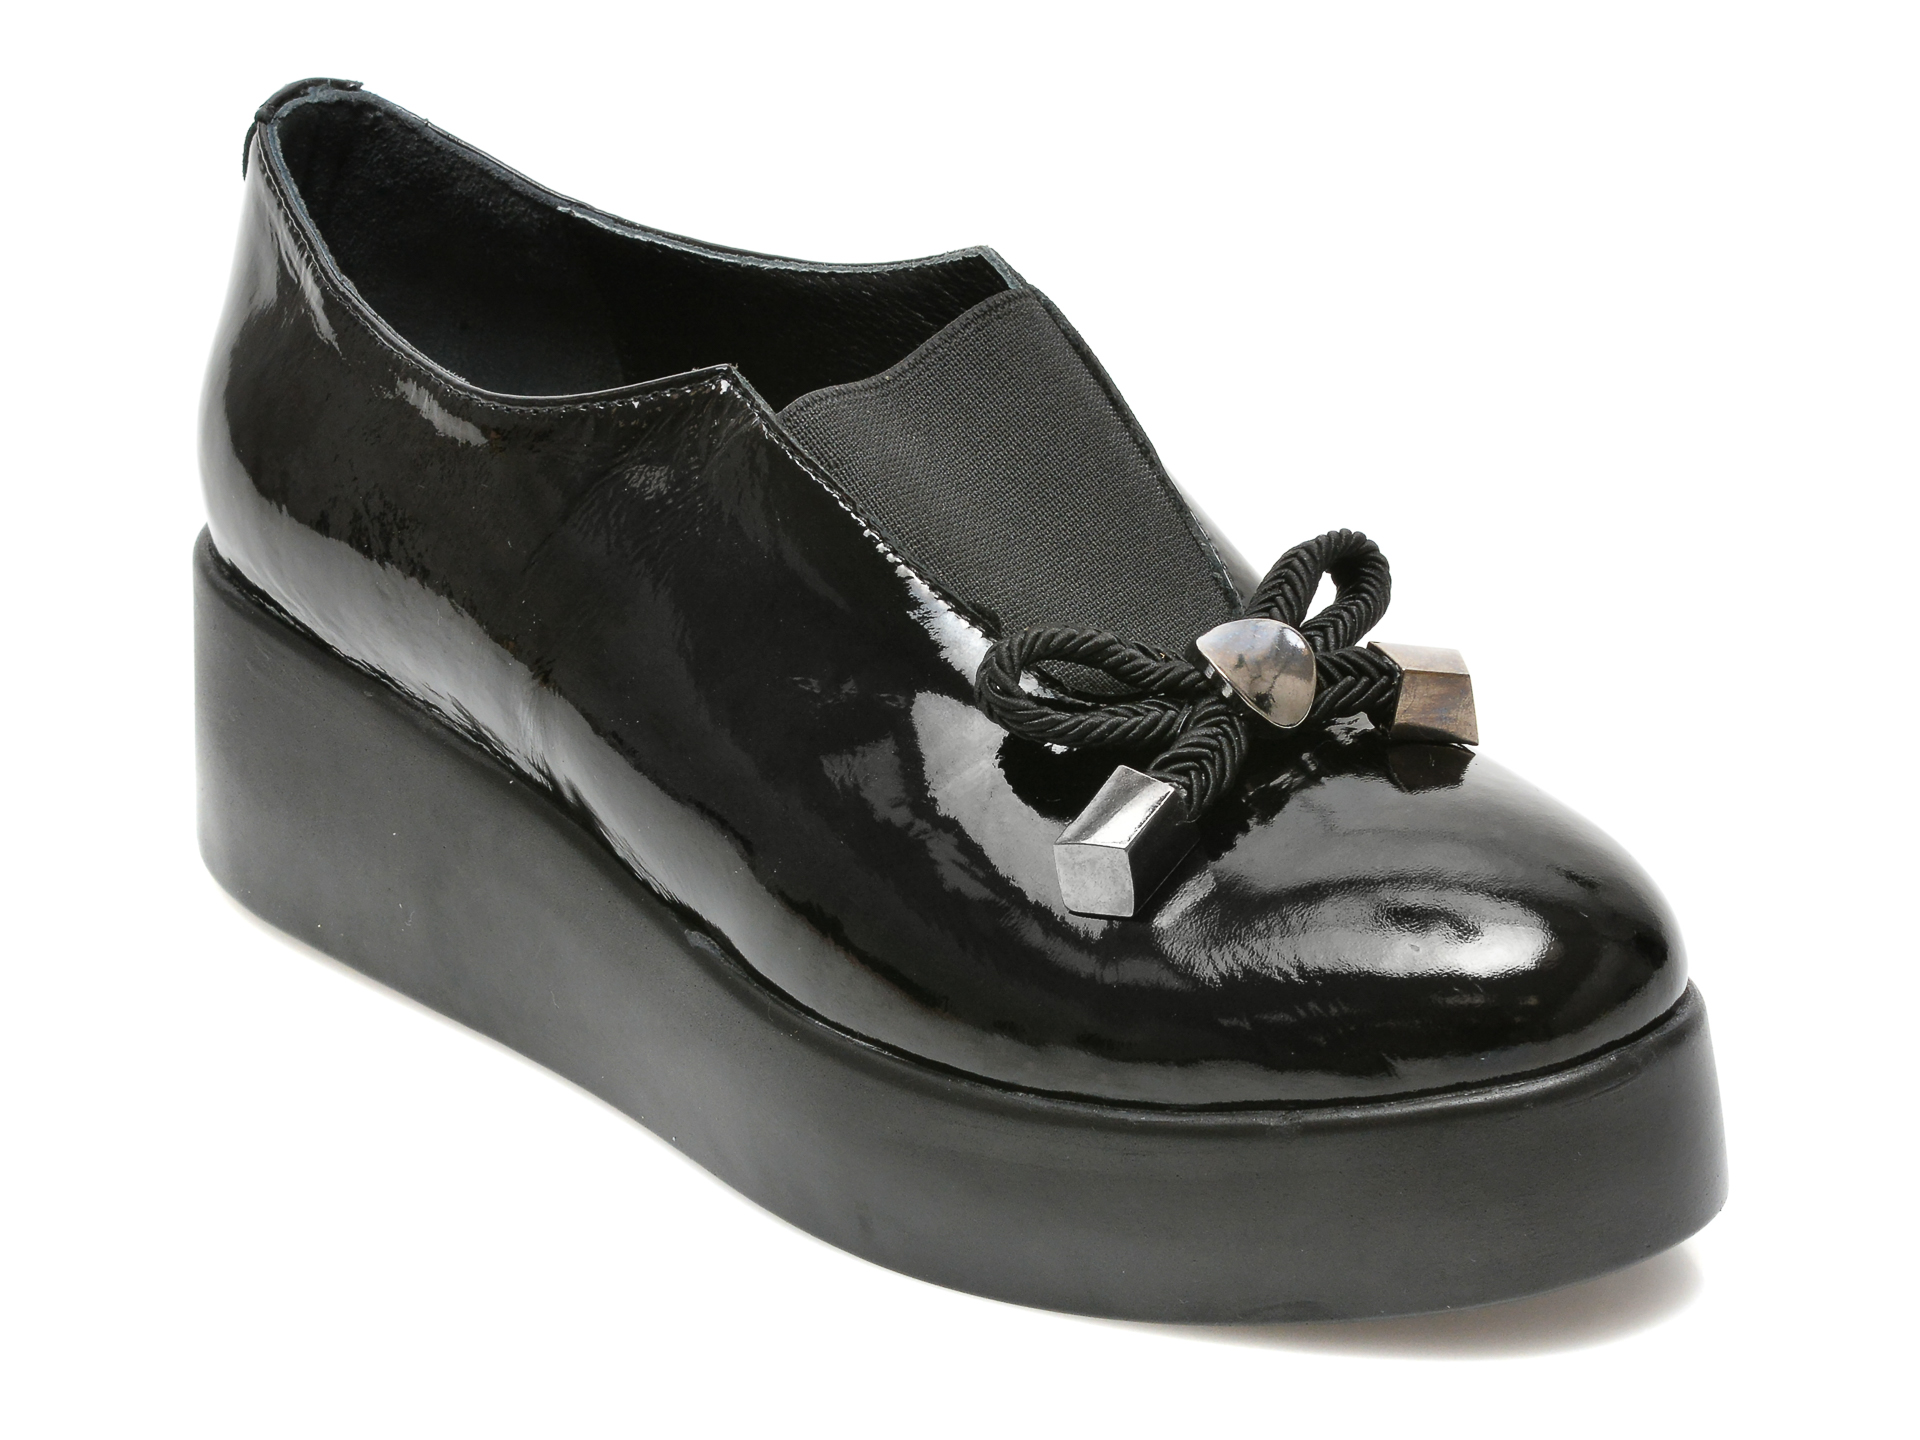 Pantofi FLAVIA PASSINI negri, 233147, din piele naturala lacuita Flavia Passini